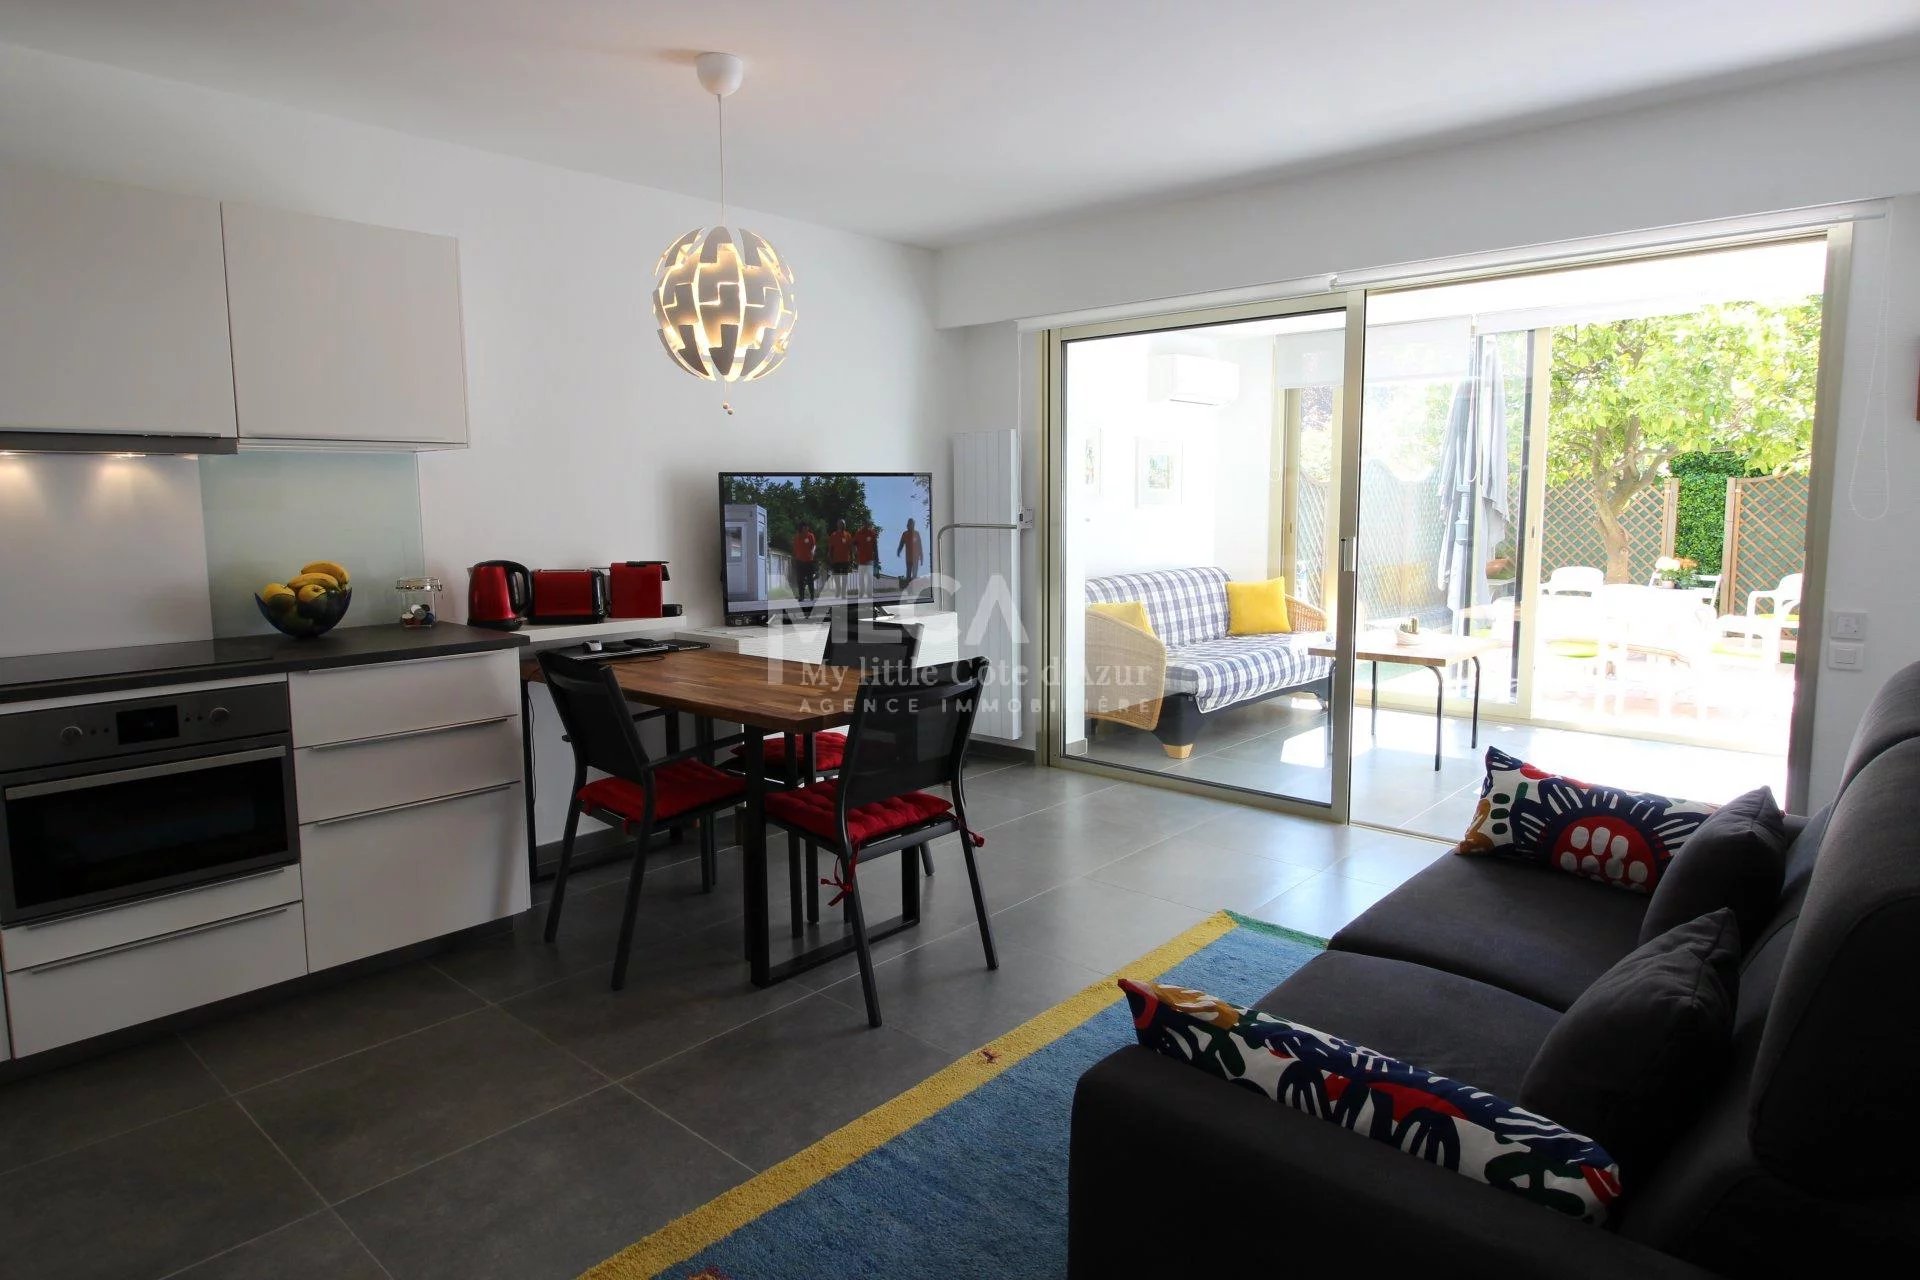 Living-room Tile Stainless steel